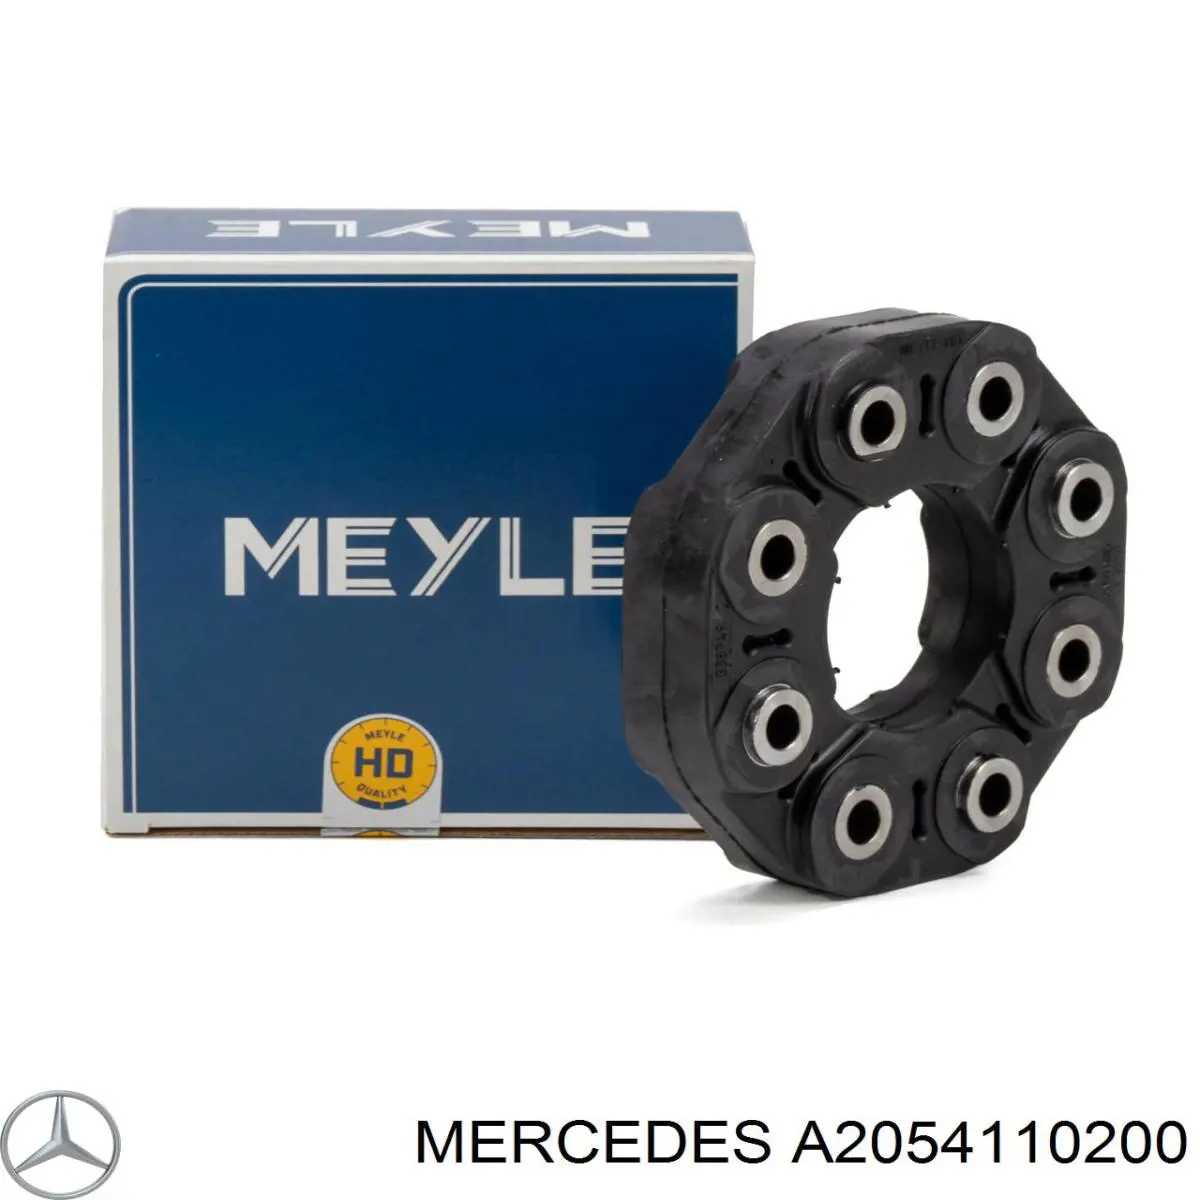 Acoplamiento elástico del cardán para Mercedes E (C238)